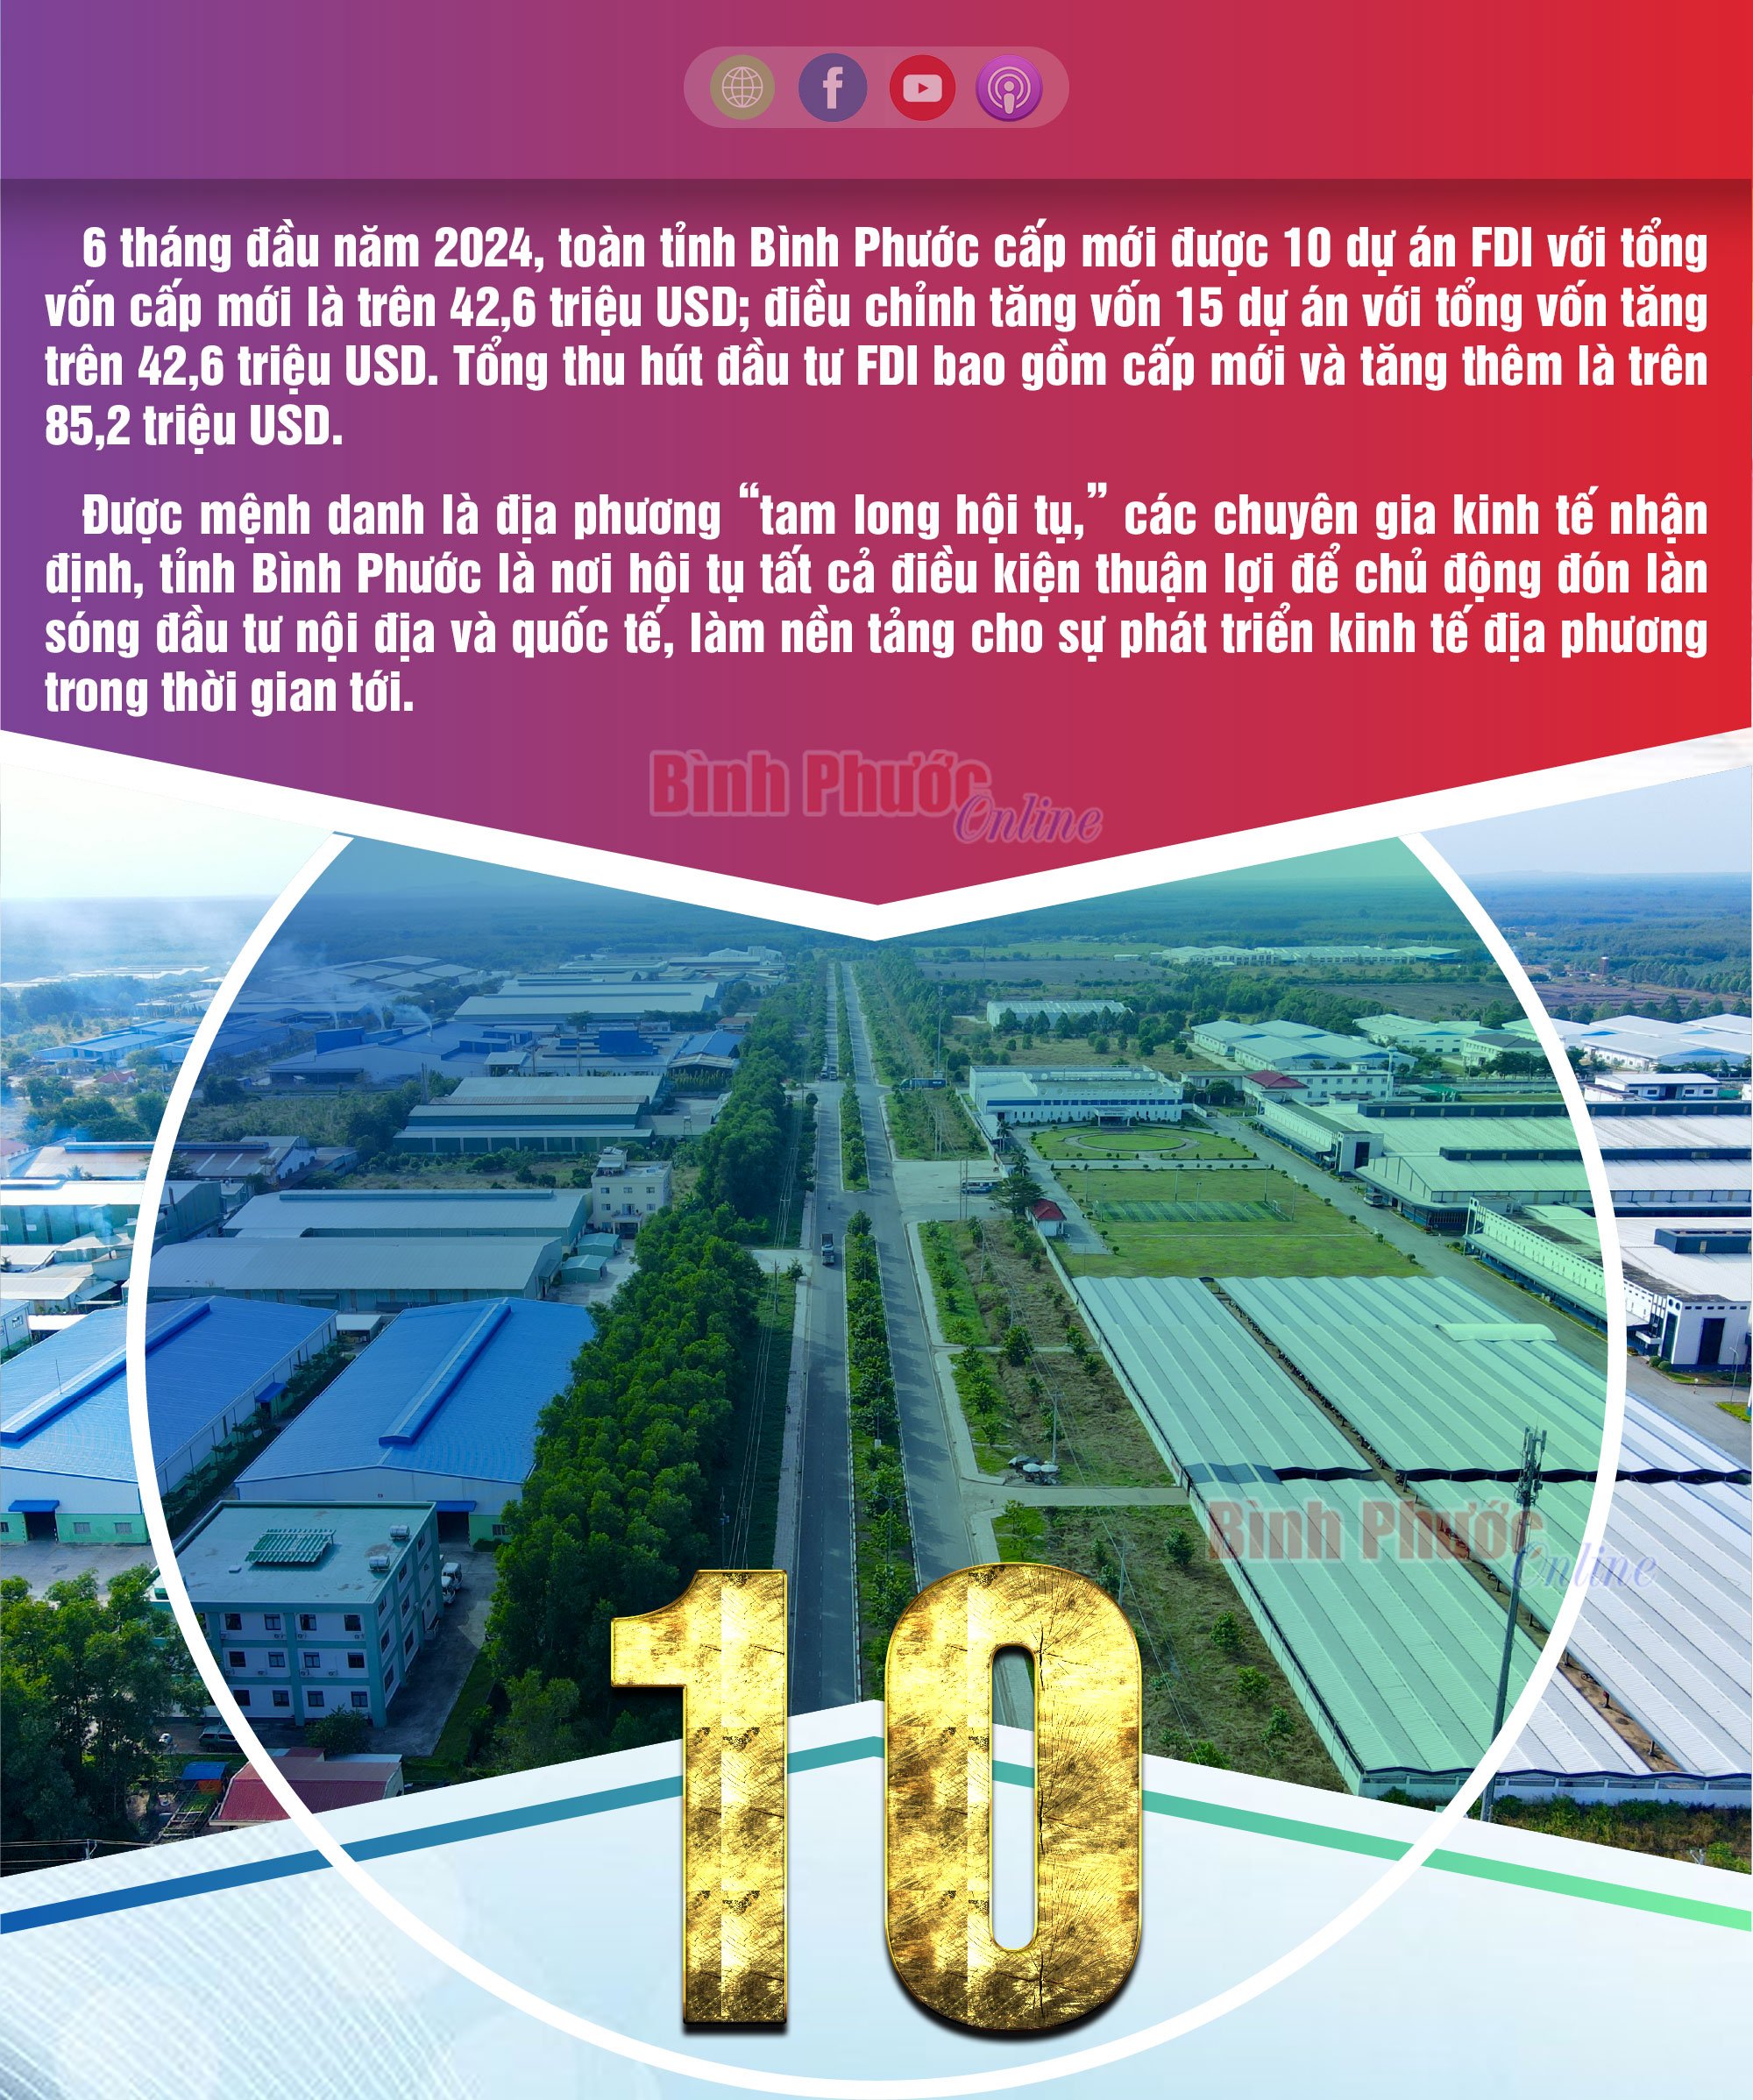 6 tháng đầu năm 2024, Bình Phước cấp mới 10 dự án FDI